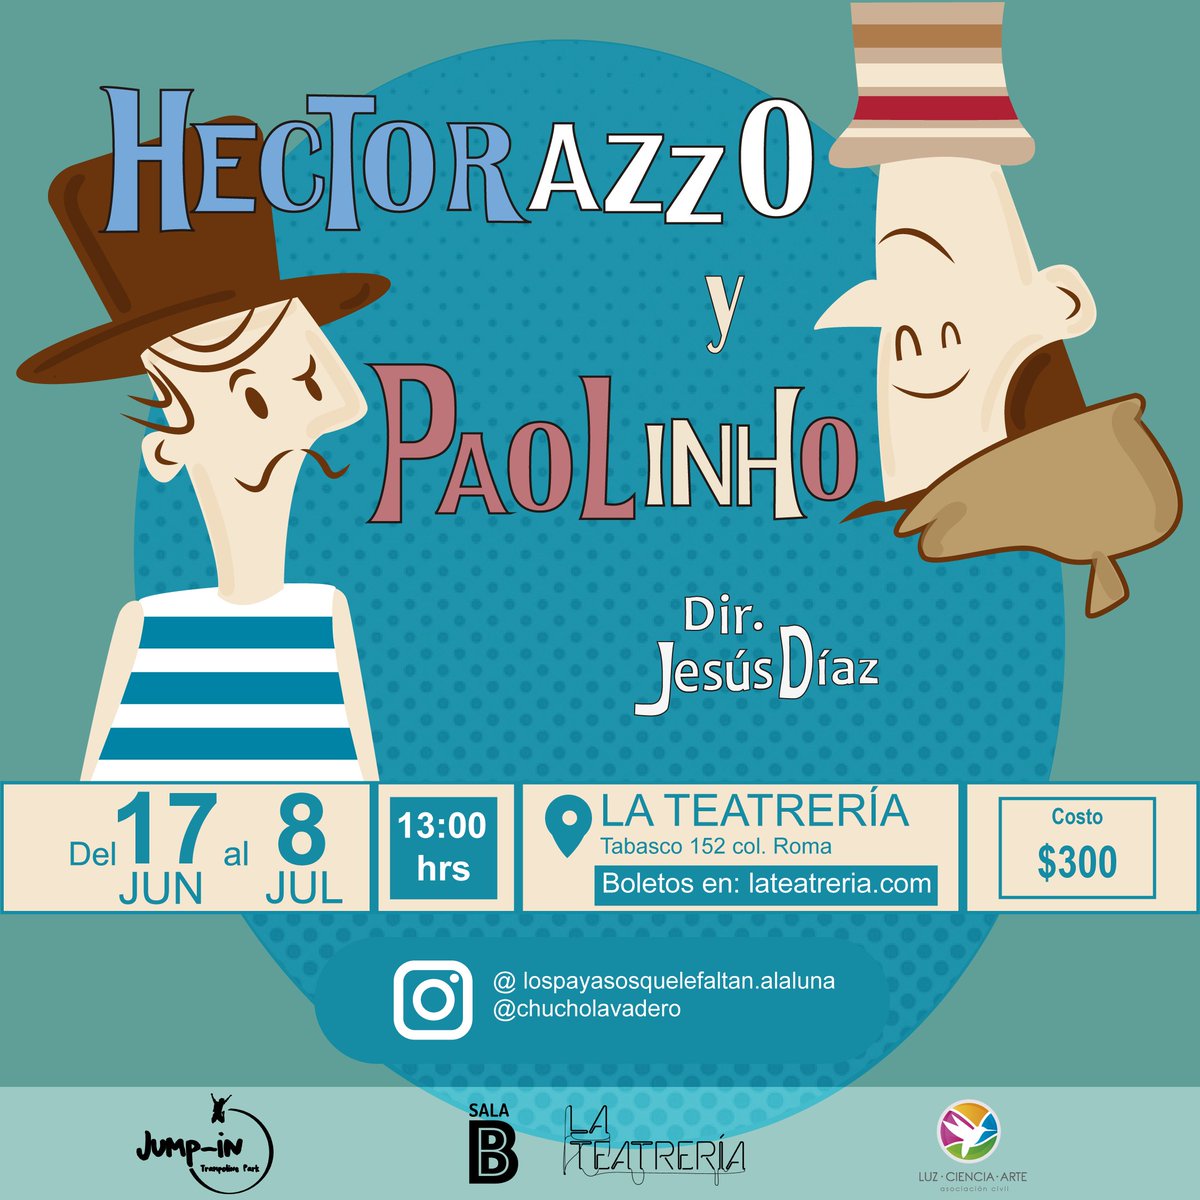 Este Sábado 17 de Junio estrena #HectorazzoYPaolinho en La Teatrería.
¡Un espectáculo lleno de risas y diversión que no te puedes perder!
Aparta tu lugar aquí 👉👉👉bit.ly/HectorazzoyPao…